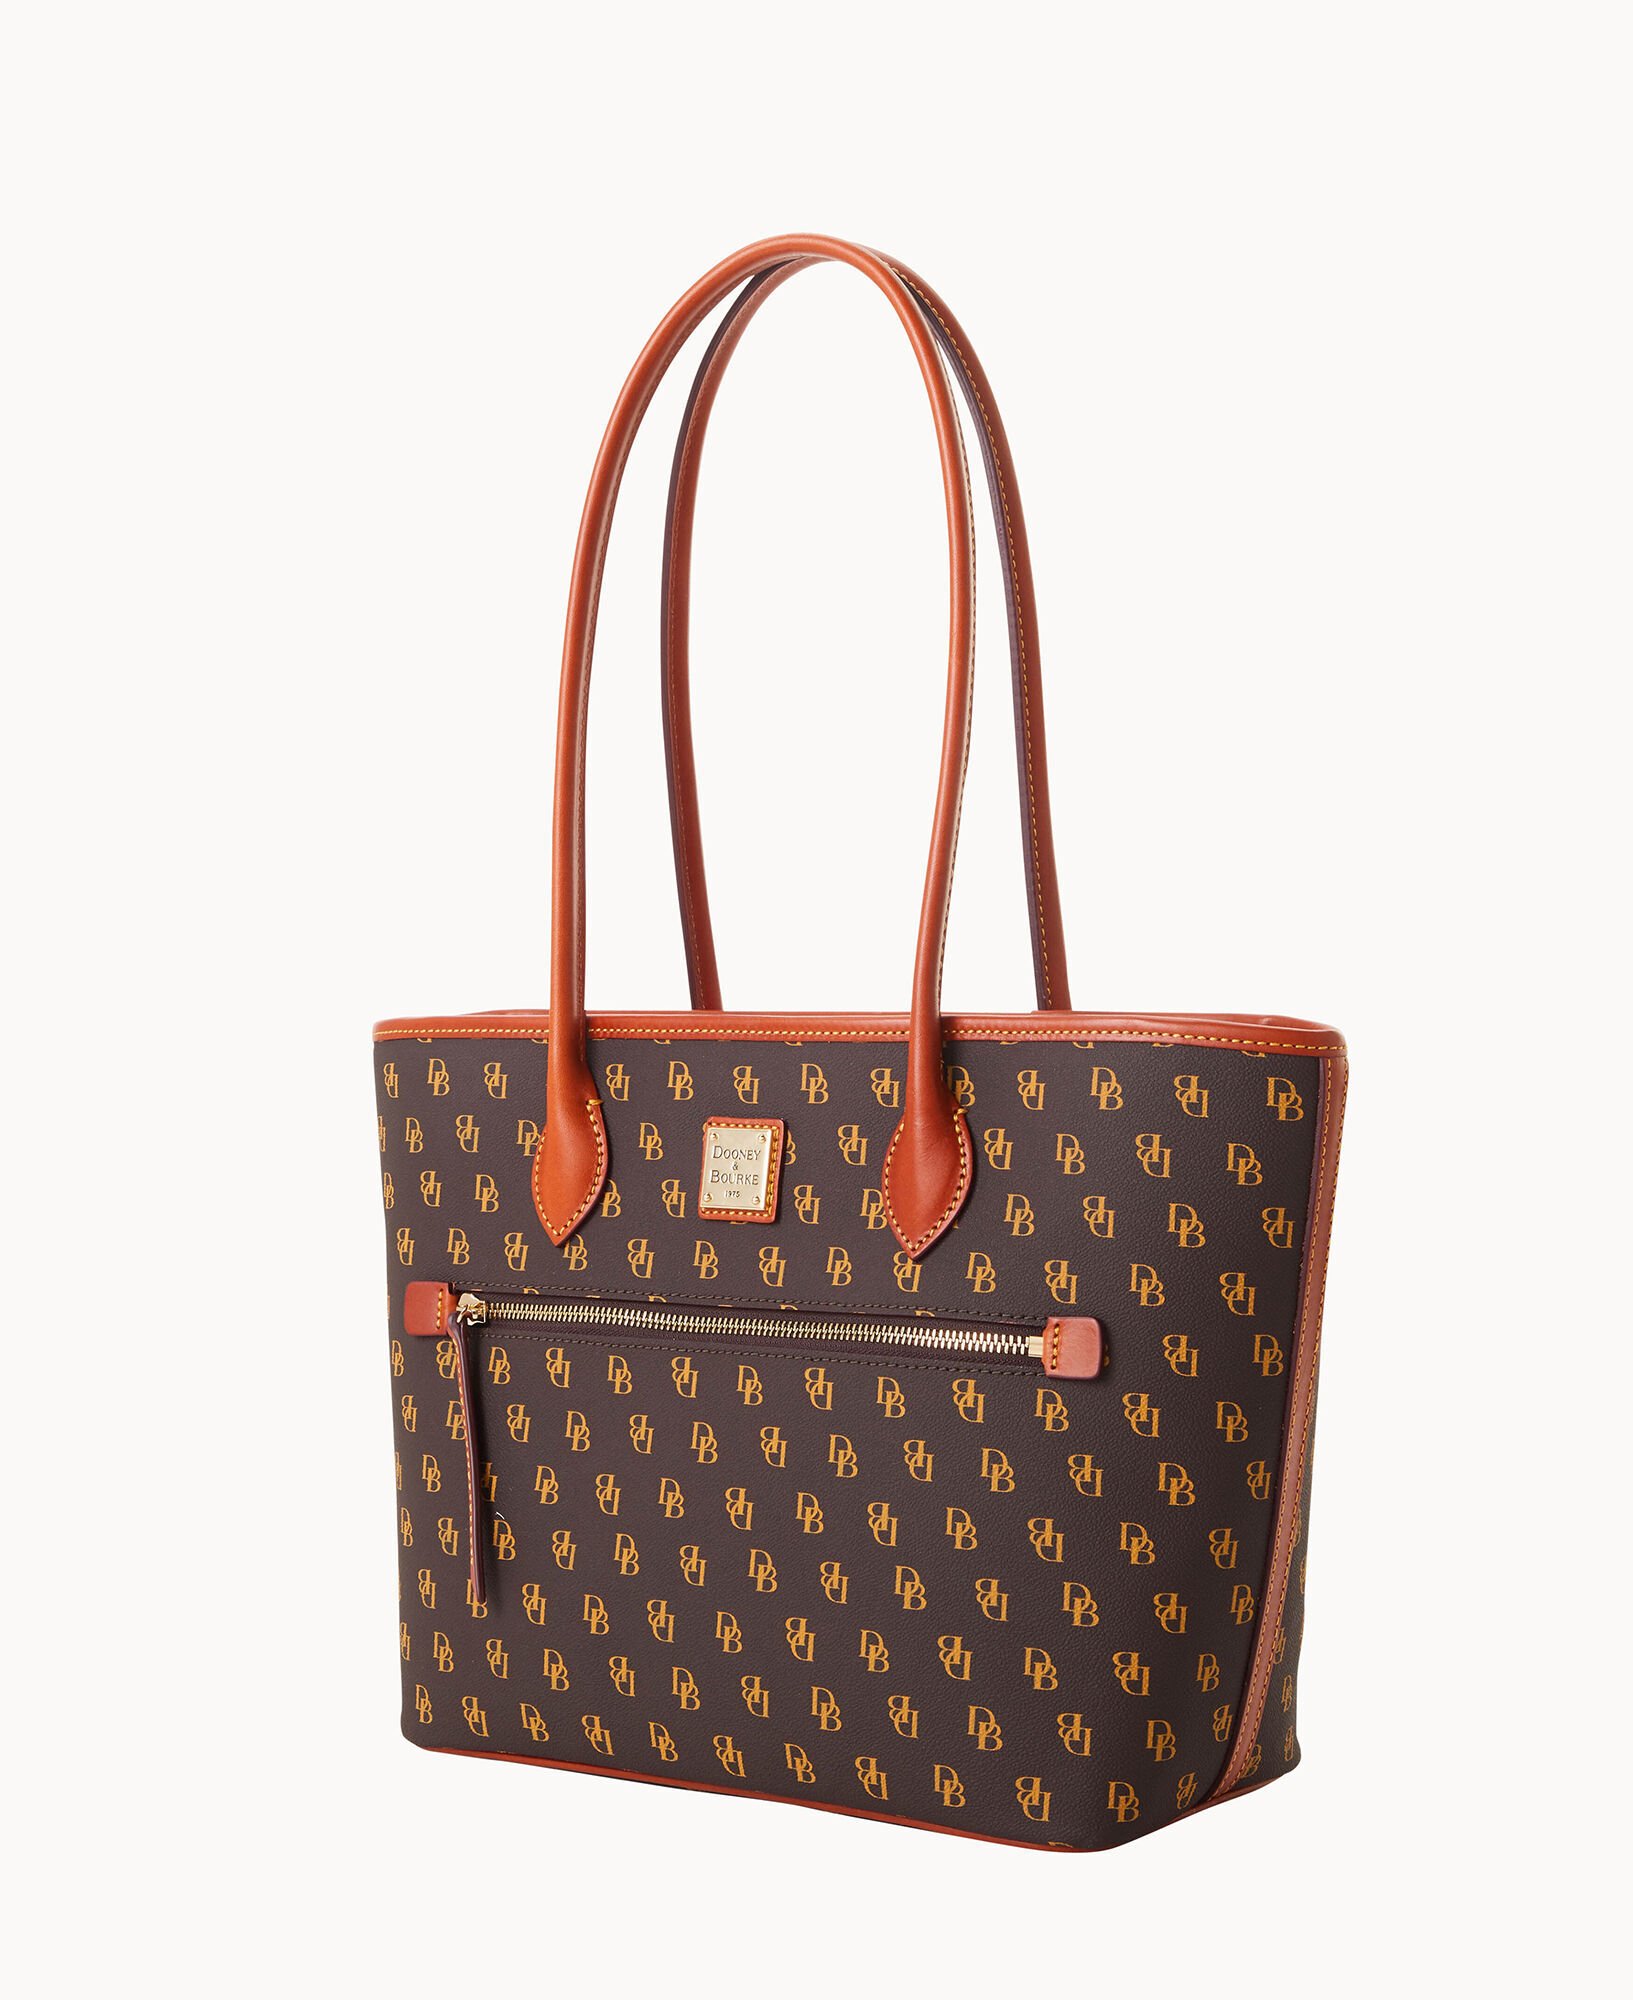  Dooney & Bourke Handbag, Gretta Zip Satchel - Brown